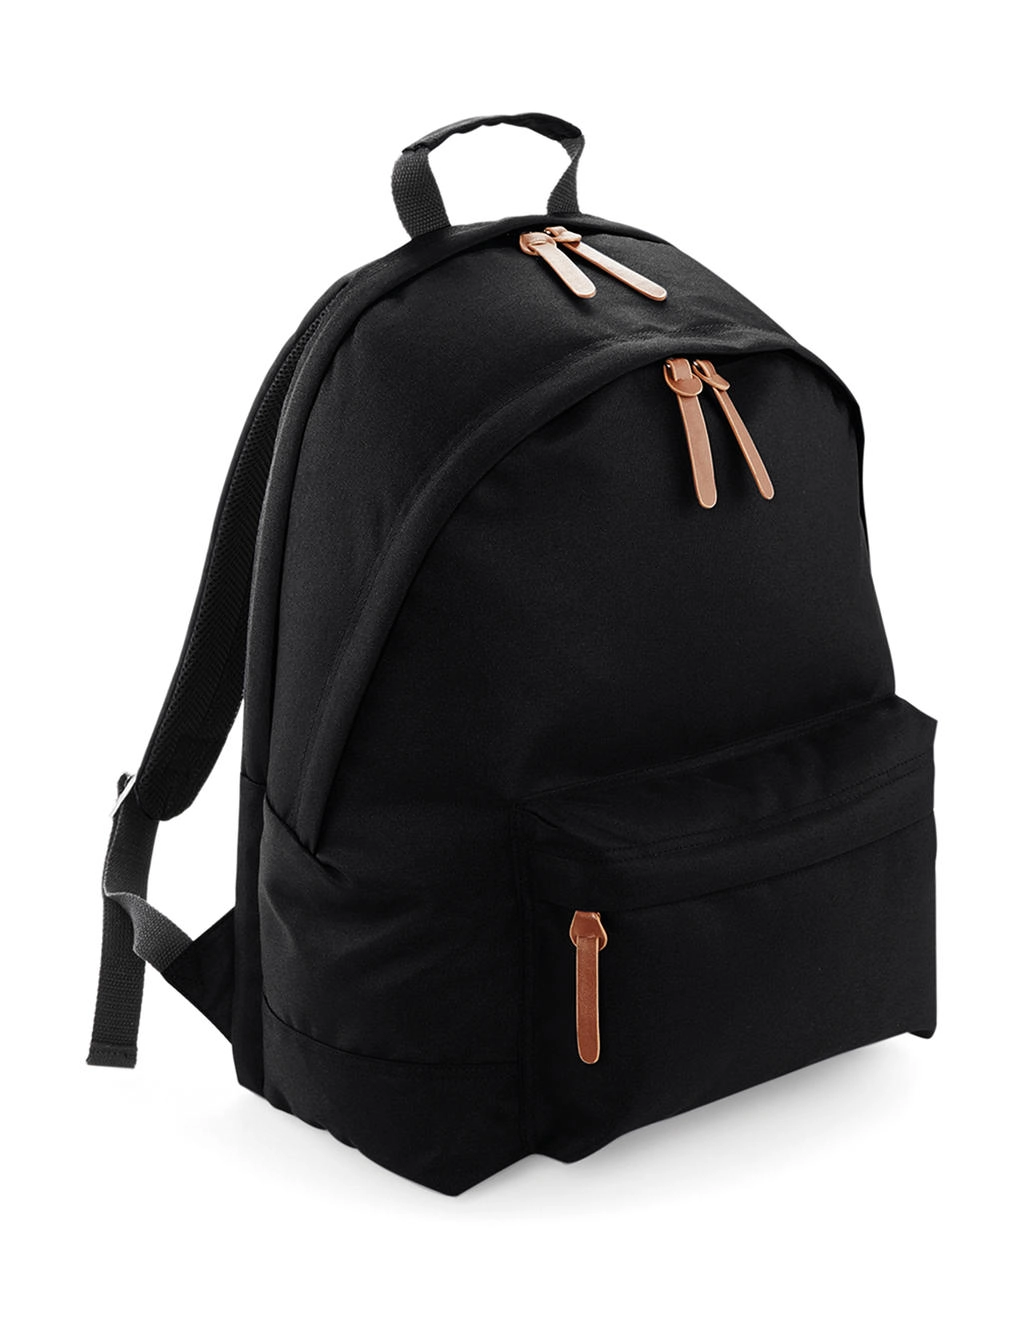 Campus Laptop Backpack zum Besticken und Bedrucken in der Farbe Black mit Ihren Logo, Schriftzug oder Motiv.